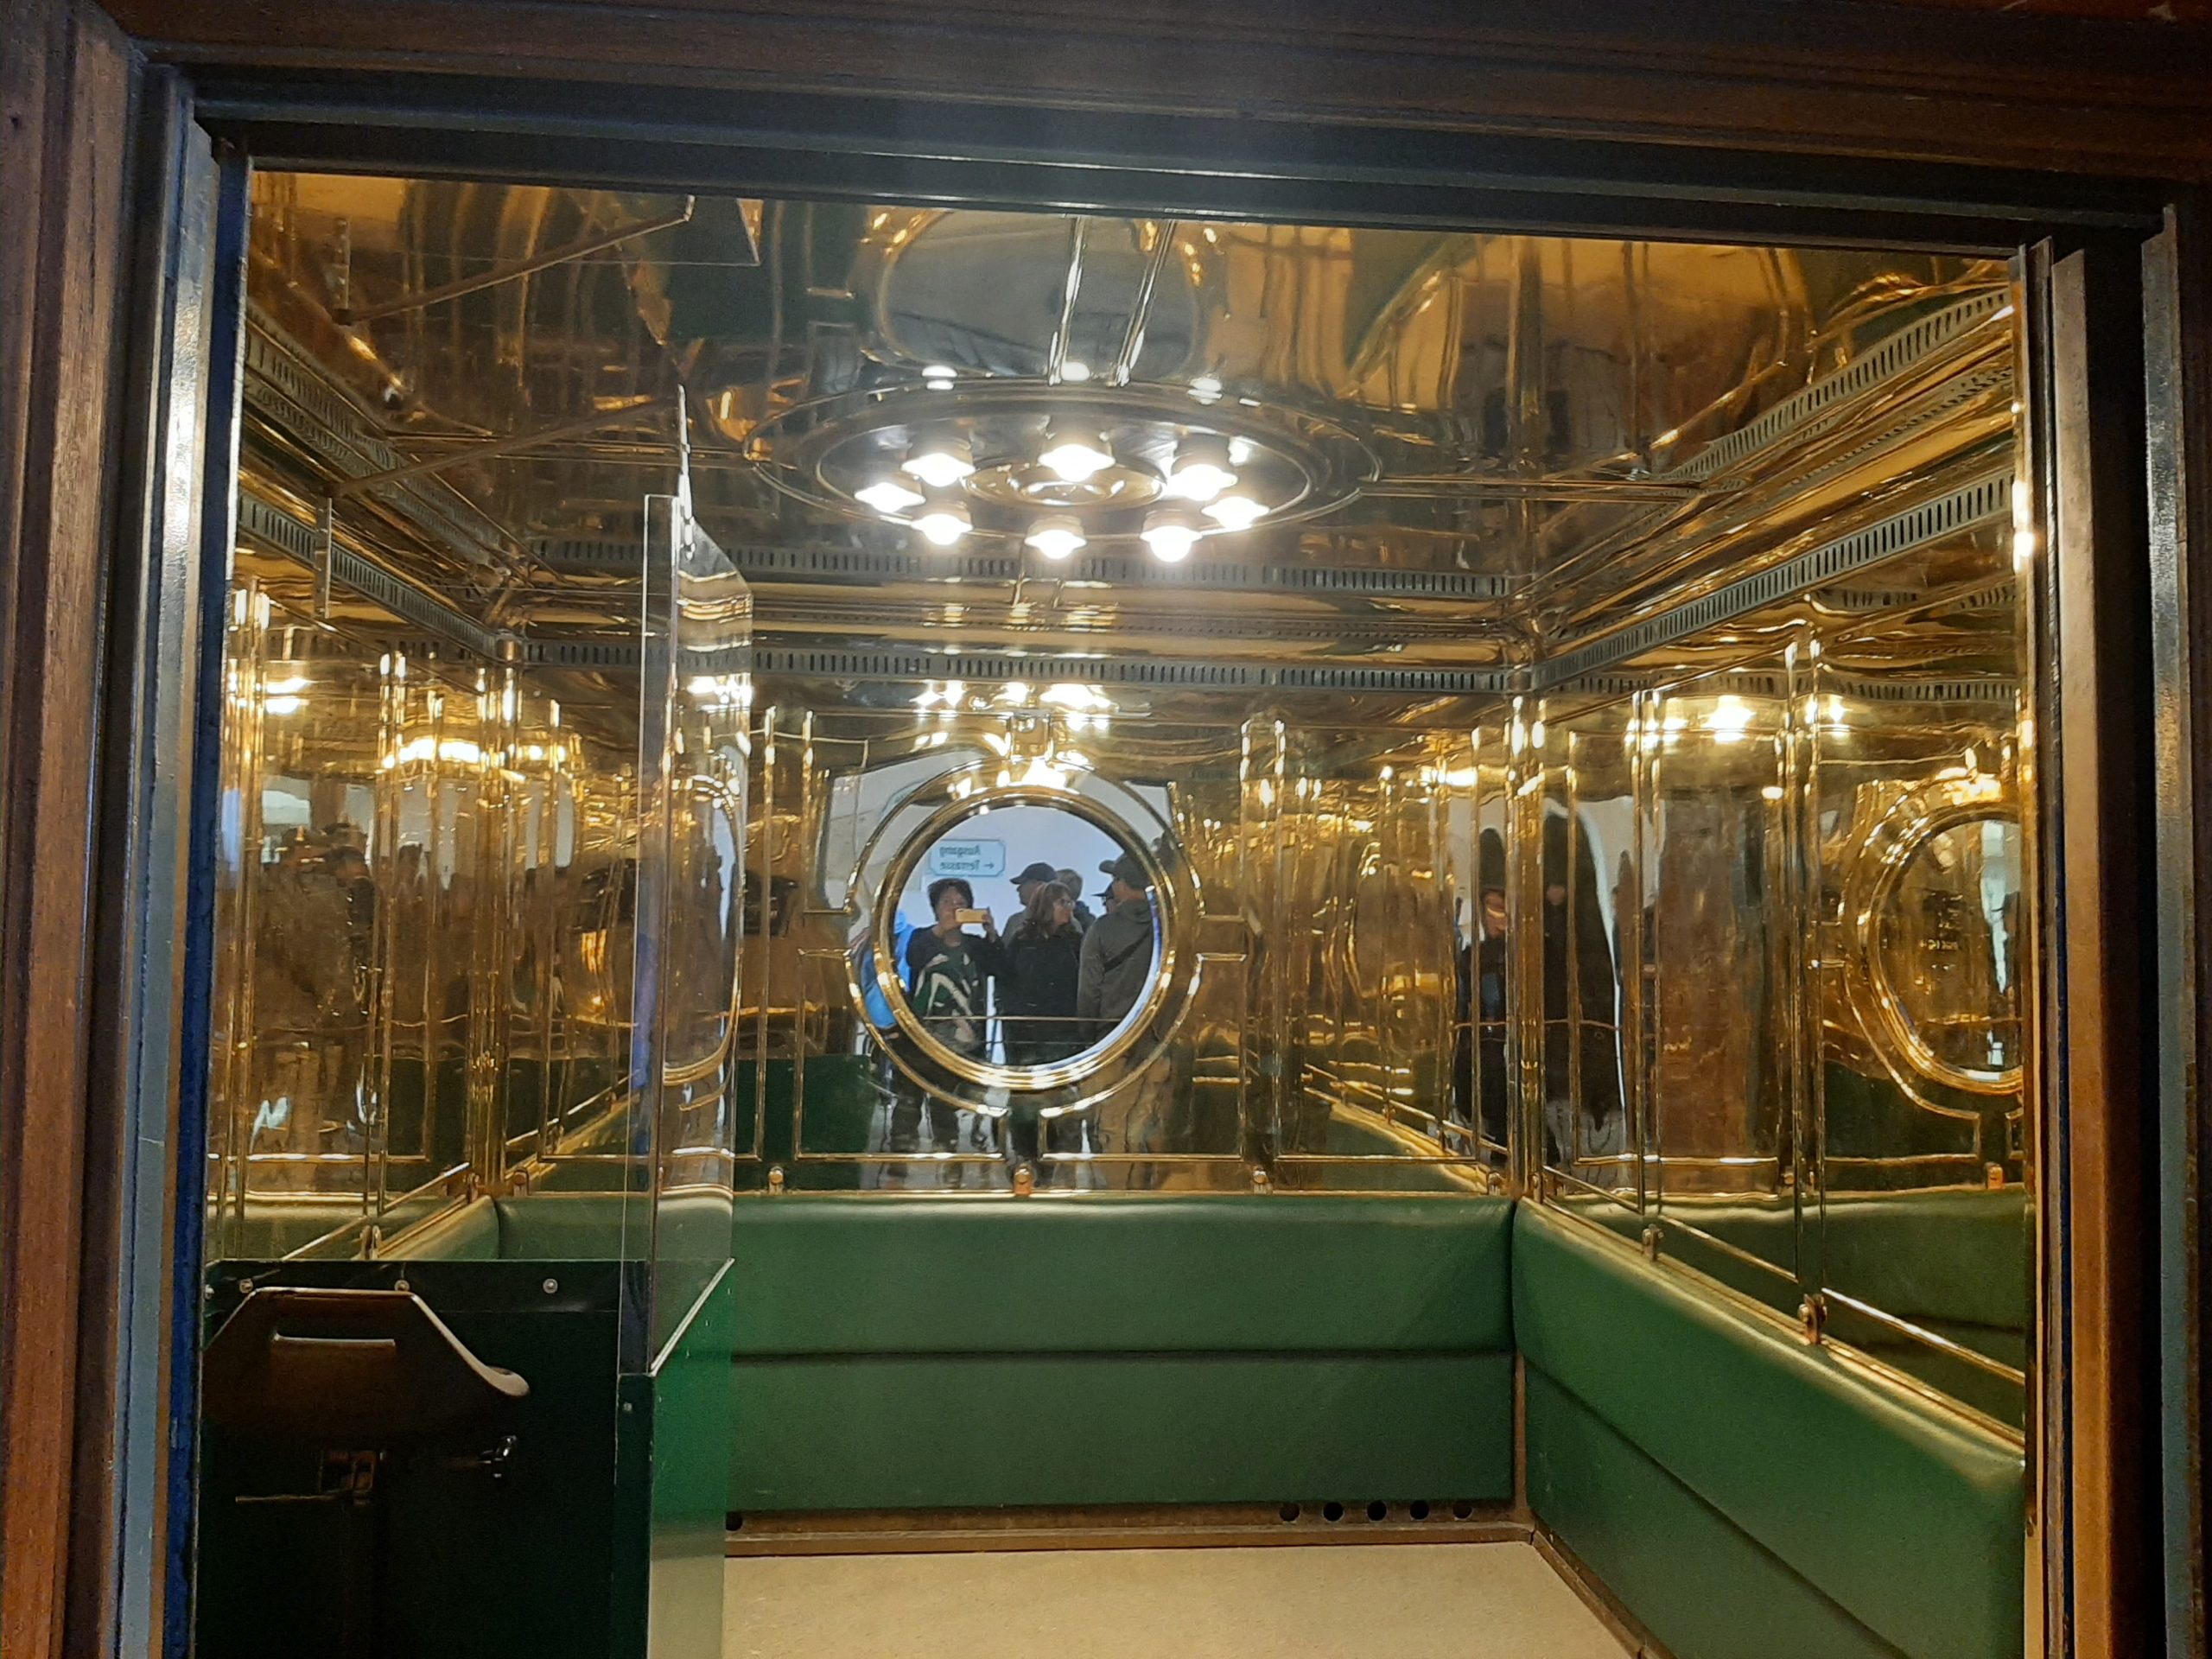 Luksuzni lift, sa venecijalnim ogledalima koji vozi 124 metra u visinu - originalno onako kako je izgledao i pre 85 godina (Napomena: čekala sam da se isprazni da bih slikala...)